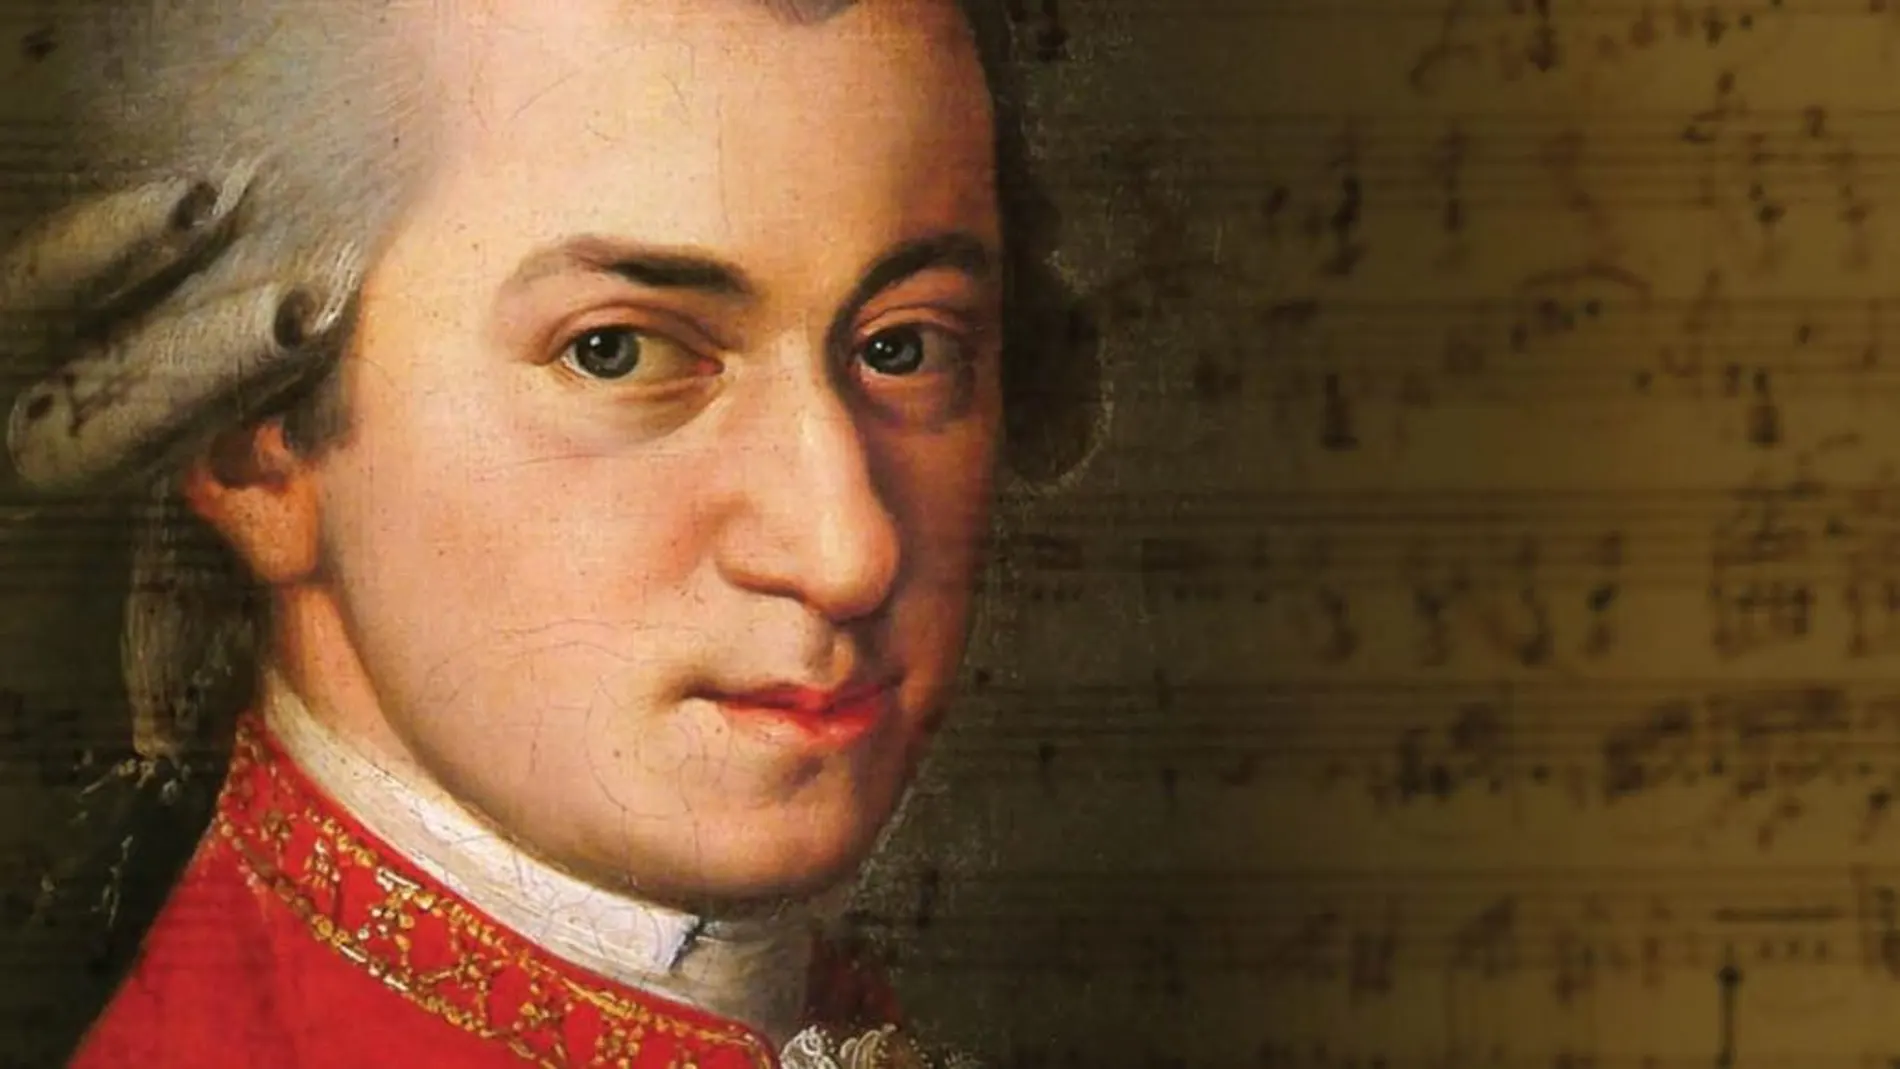 El timbre de voz de la madre de Mozart influyó en sus obras